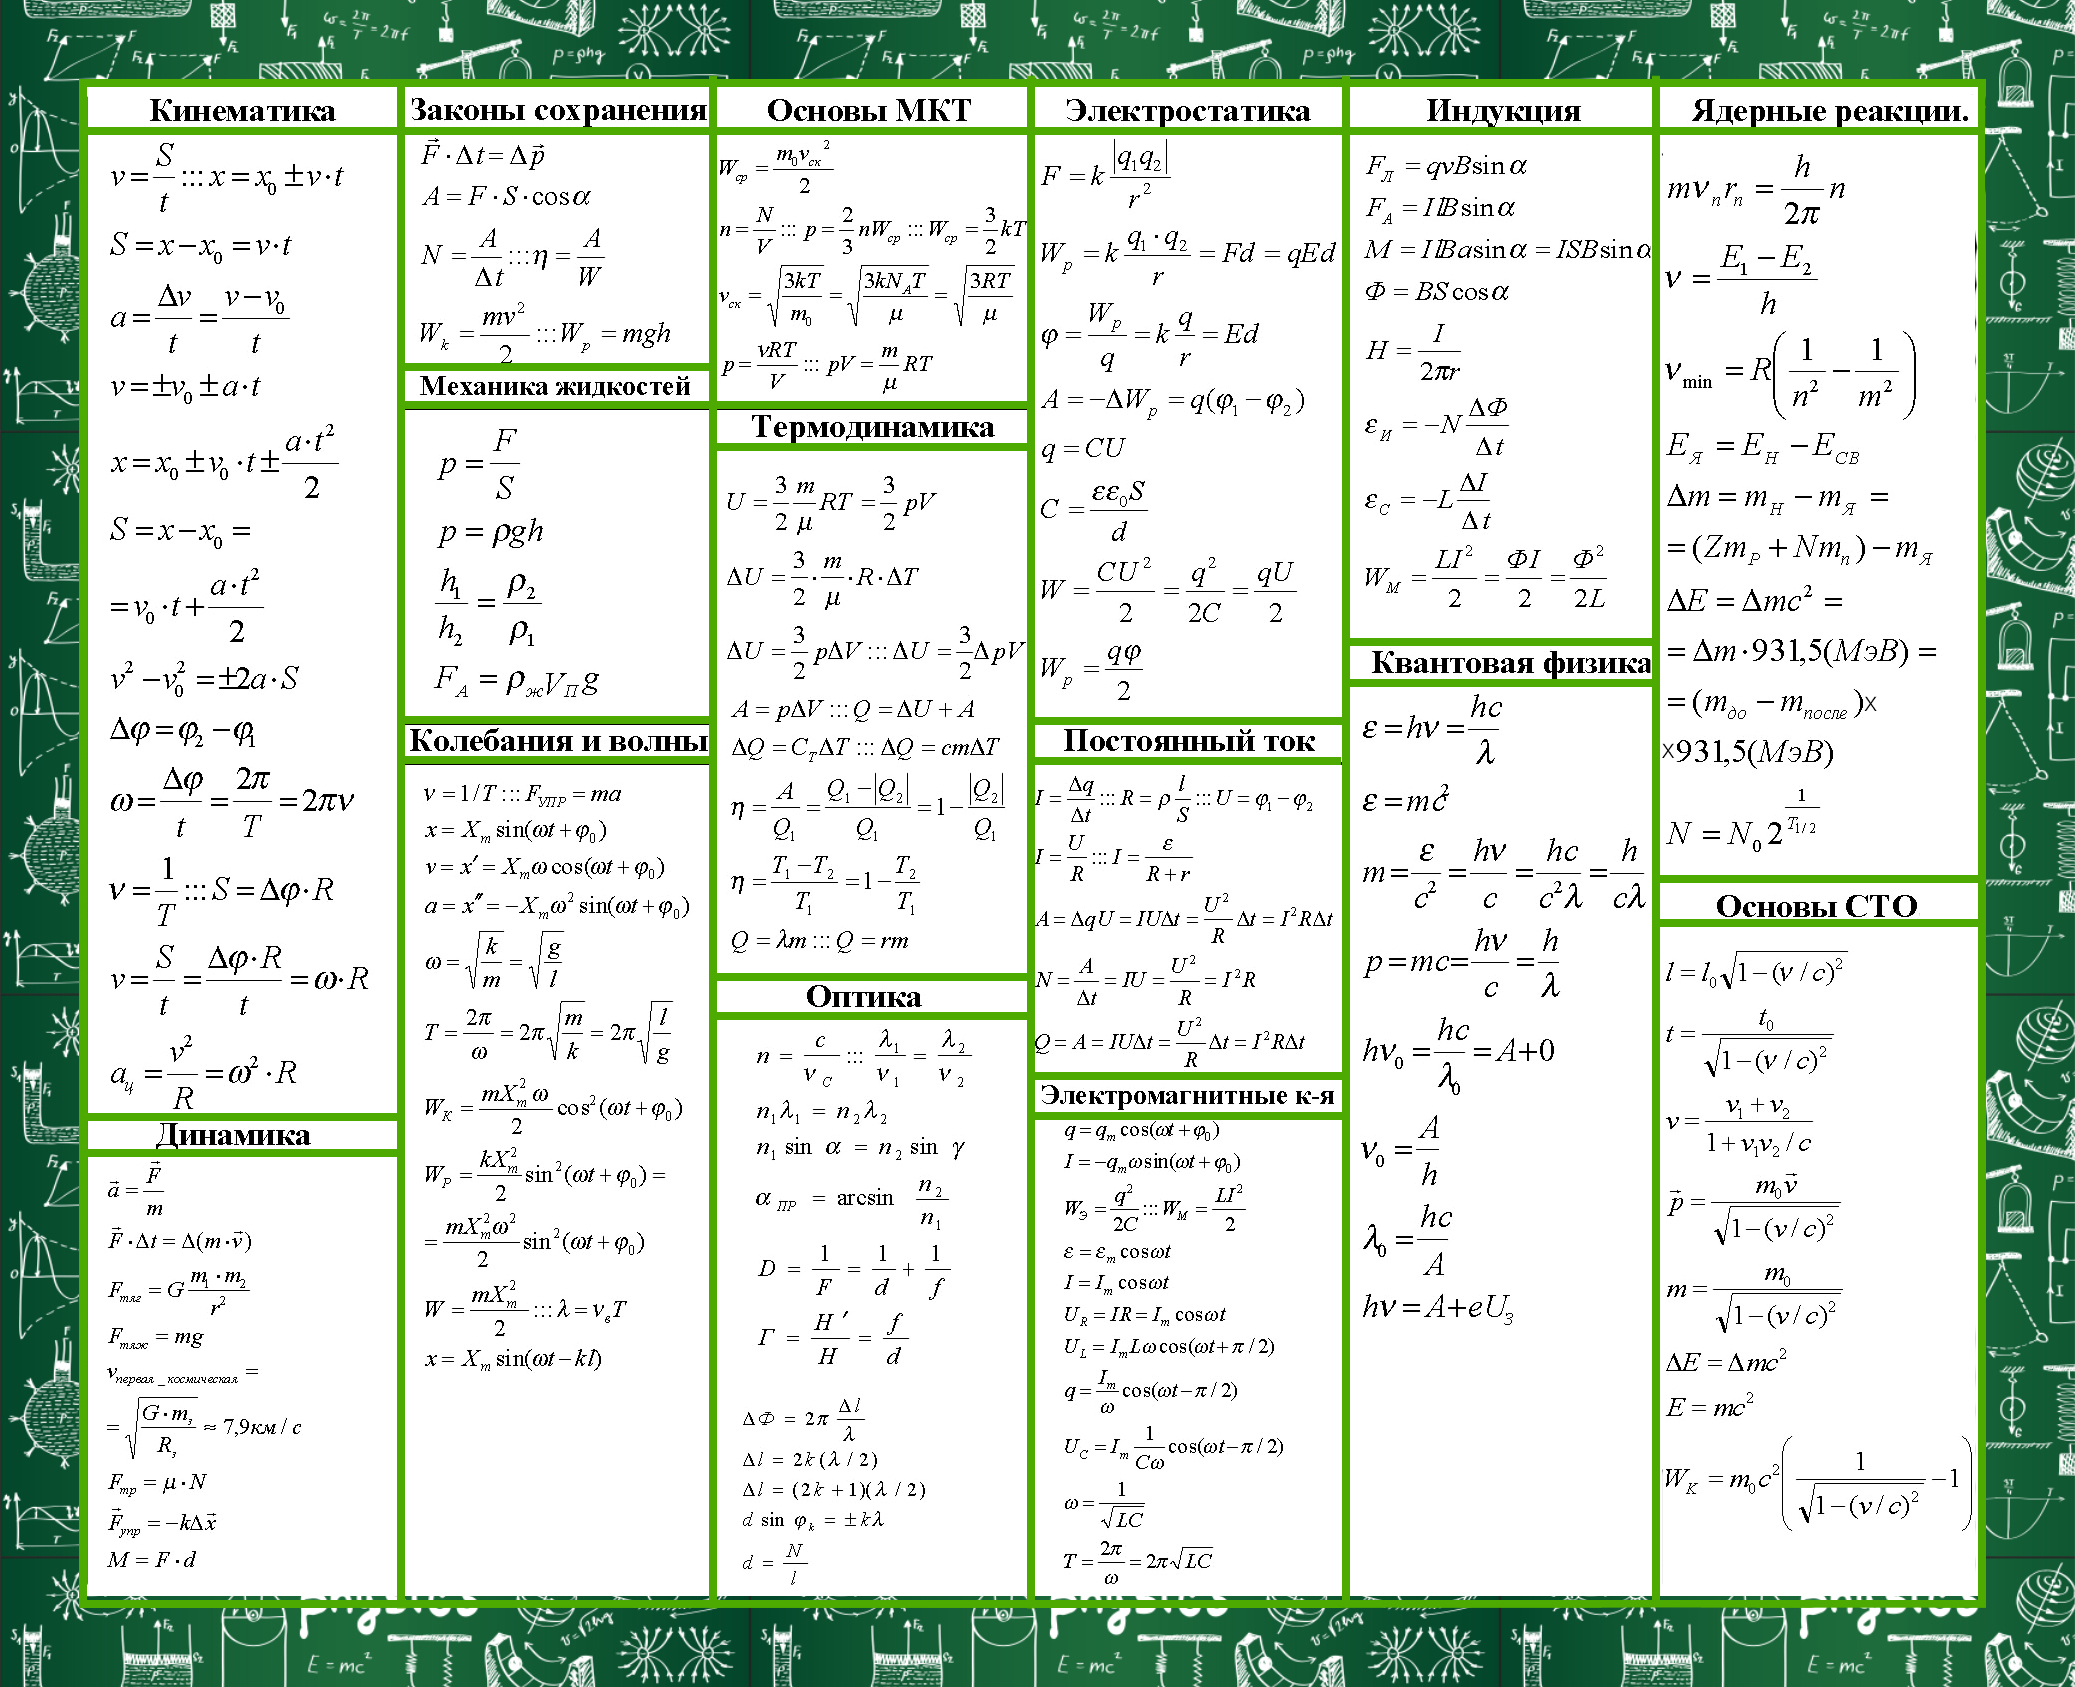 Main formulas.jpg